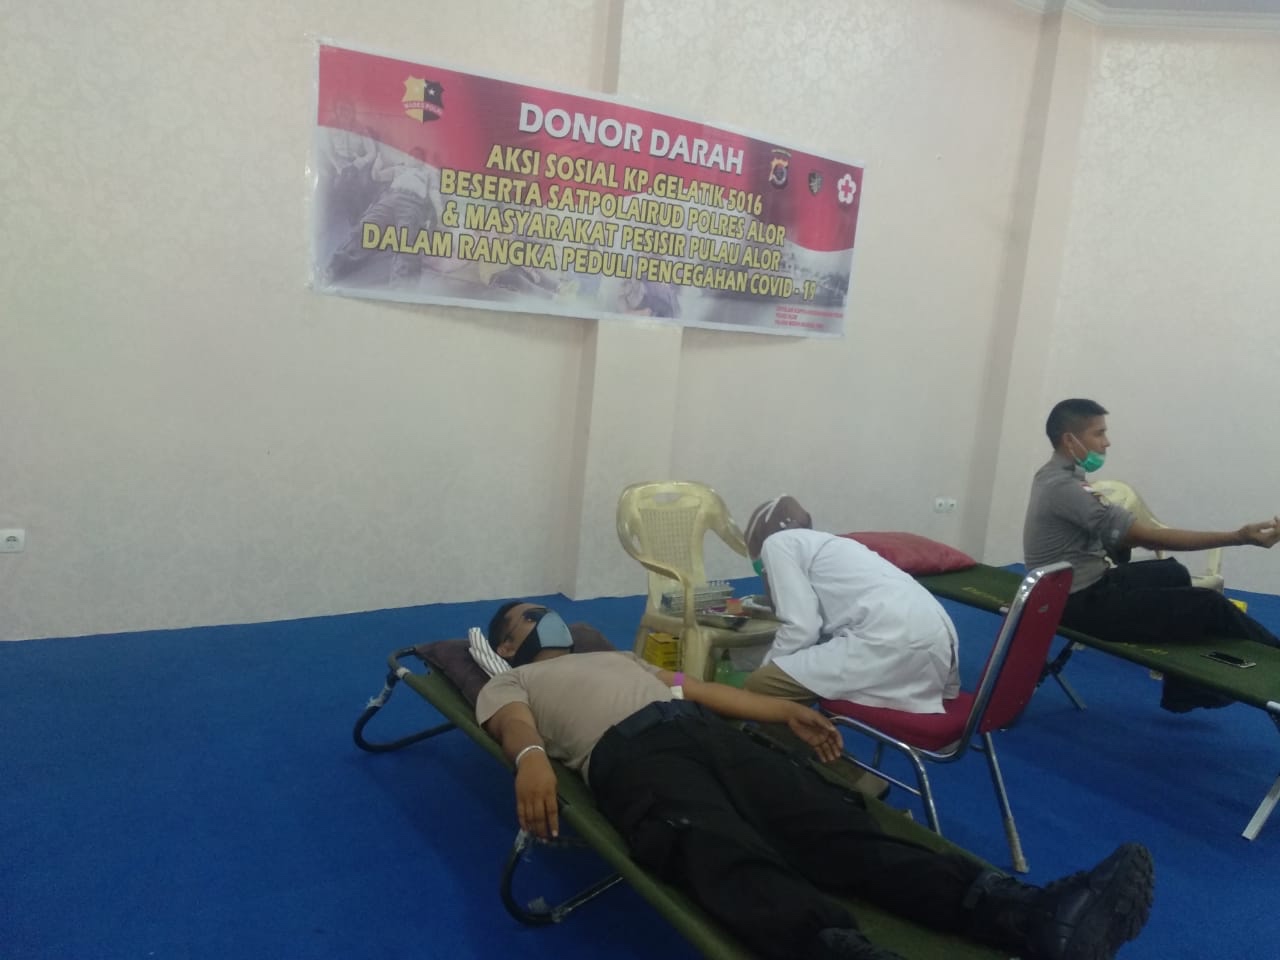 Aksi Sosial Donor Darah Dalam Rangka Peduli Pencegahan Covid-19